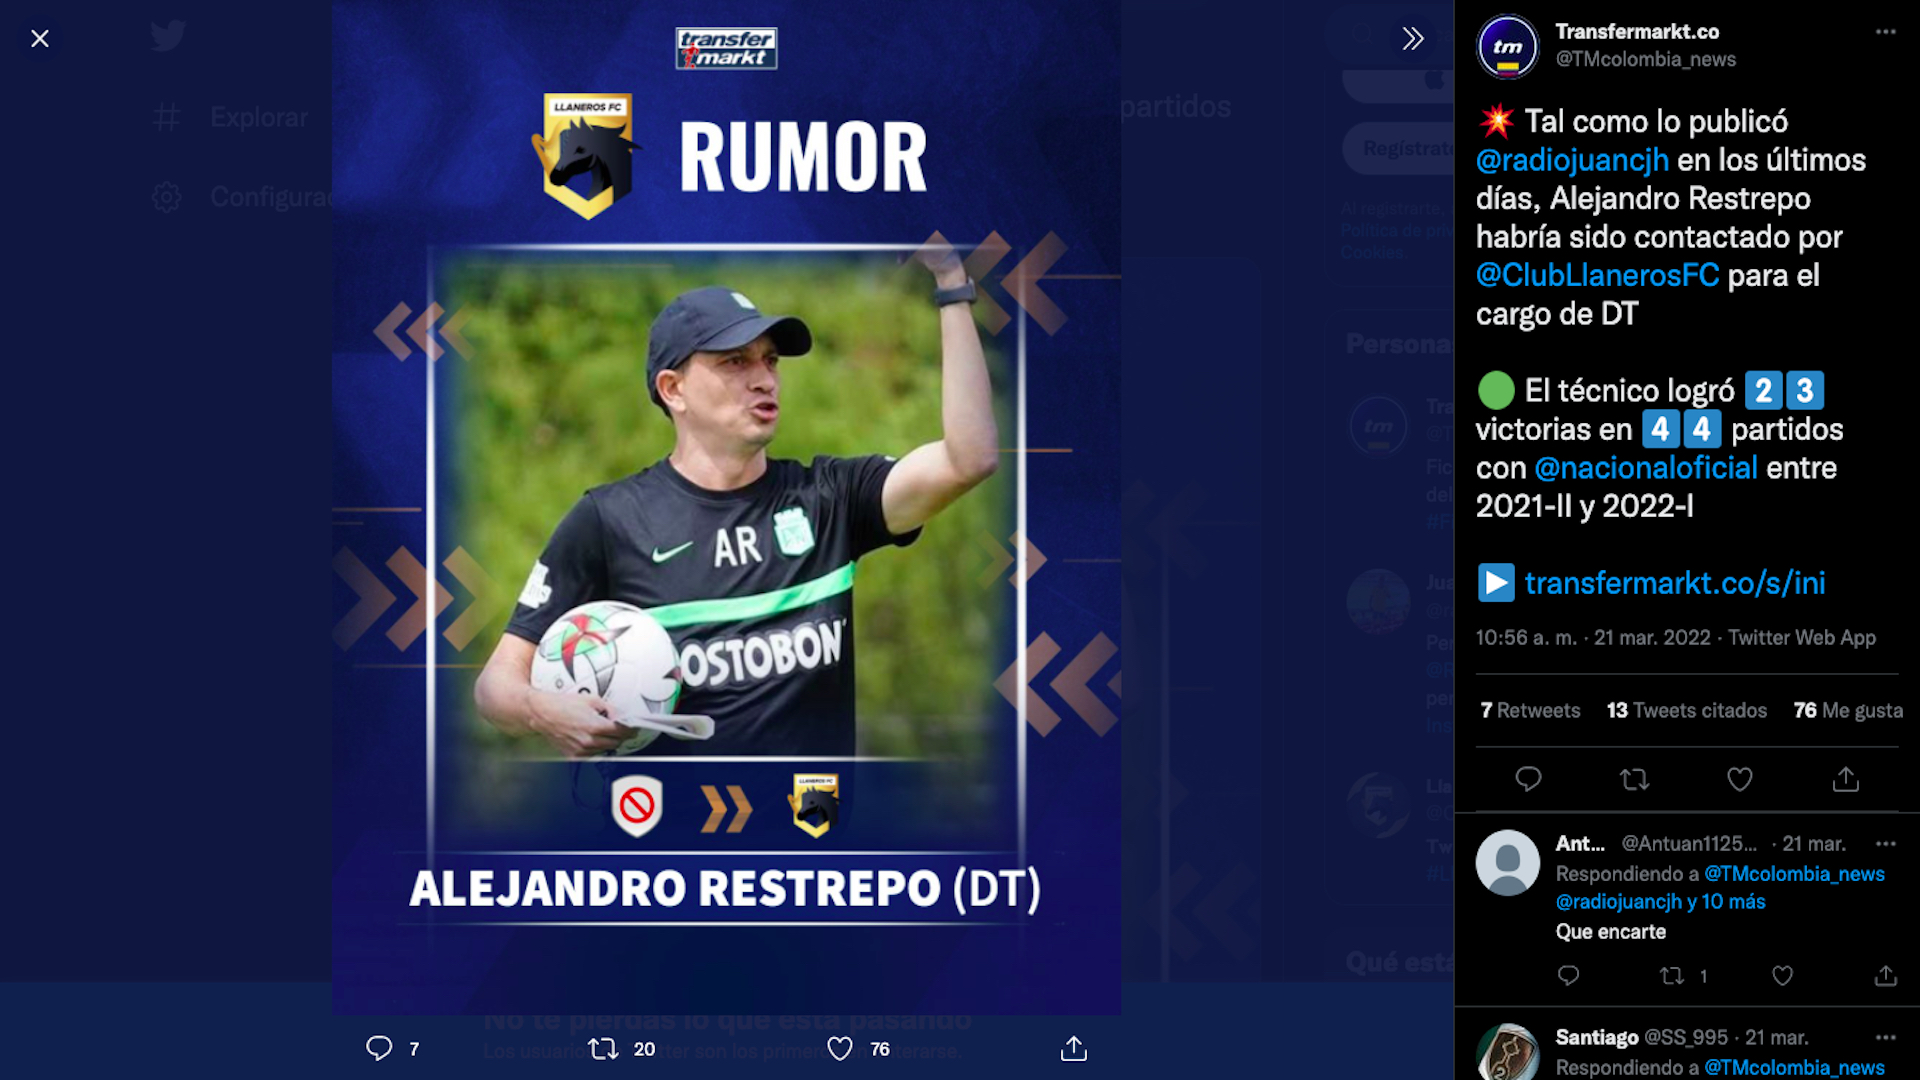 Alejandro Restrepo recibe oferta laboral para dirigir a Llaneros FC en el Torneo BetPlay Dimayor / (Twitter: @TMcolombia_news)